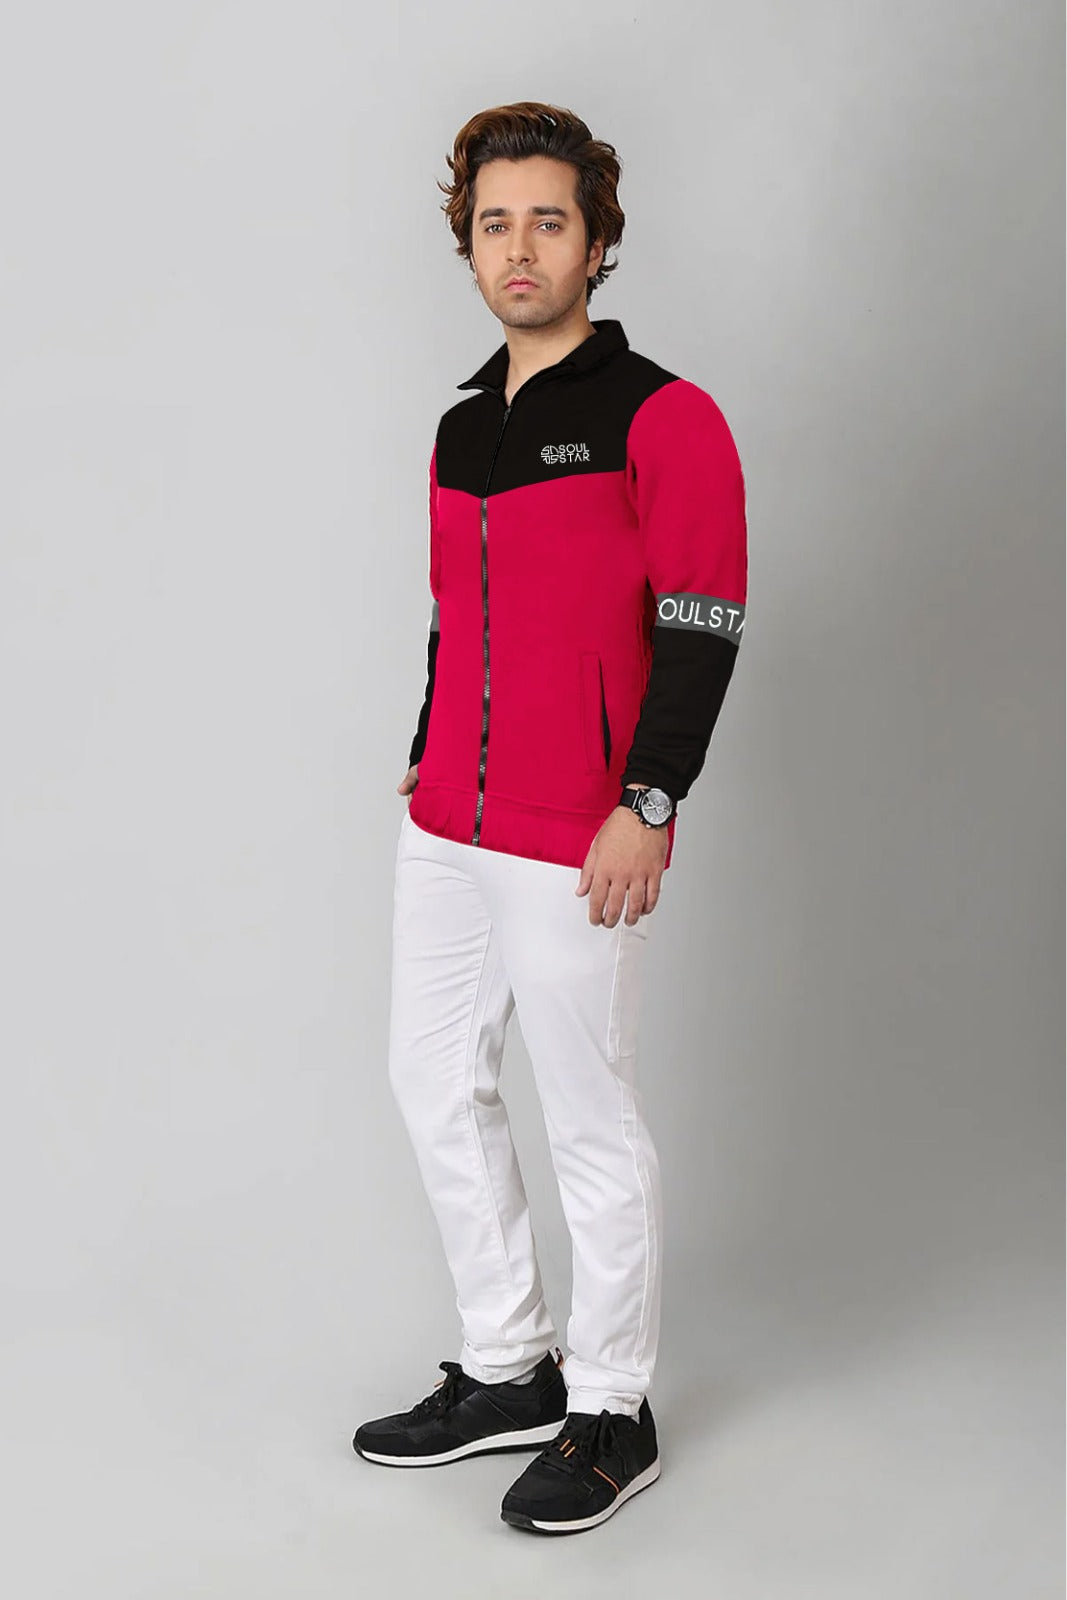 Men’s color block zipper jacket